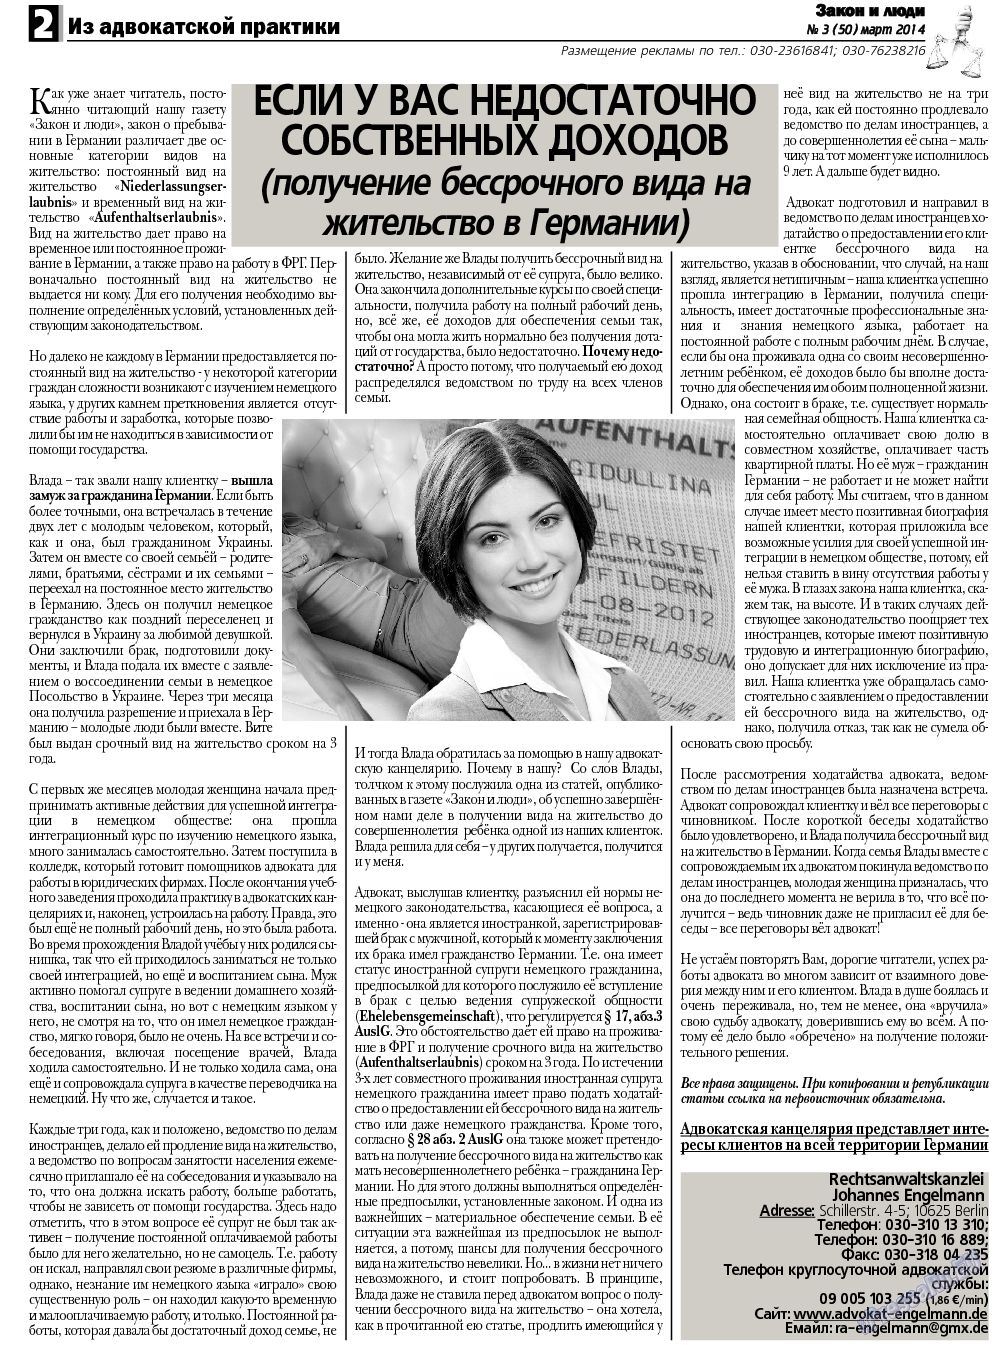 Закон и люди, газета. 2014 №3 стр.2